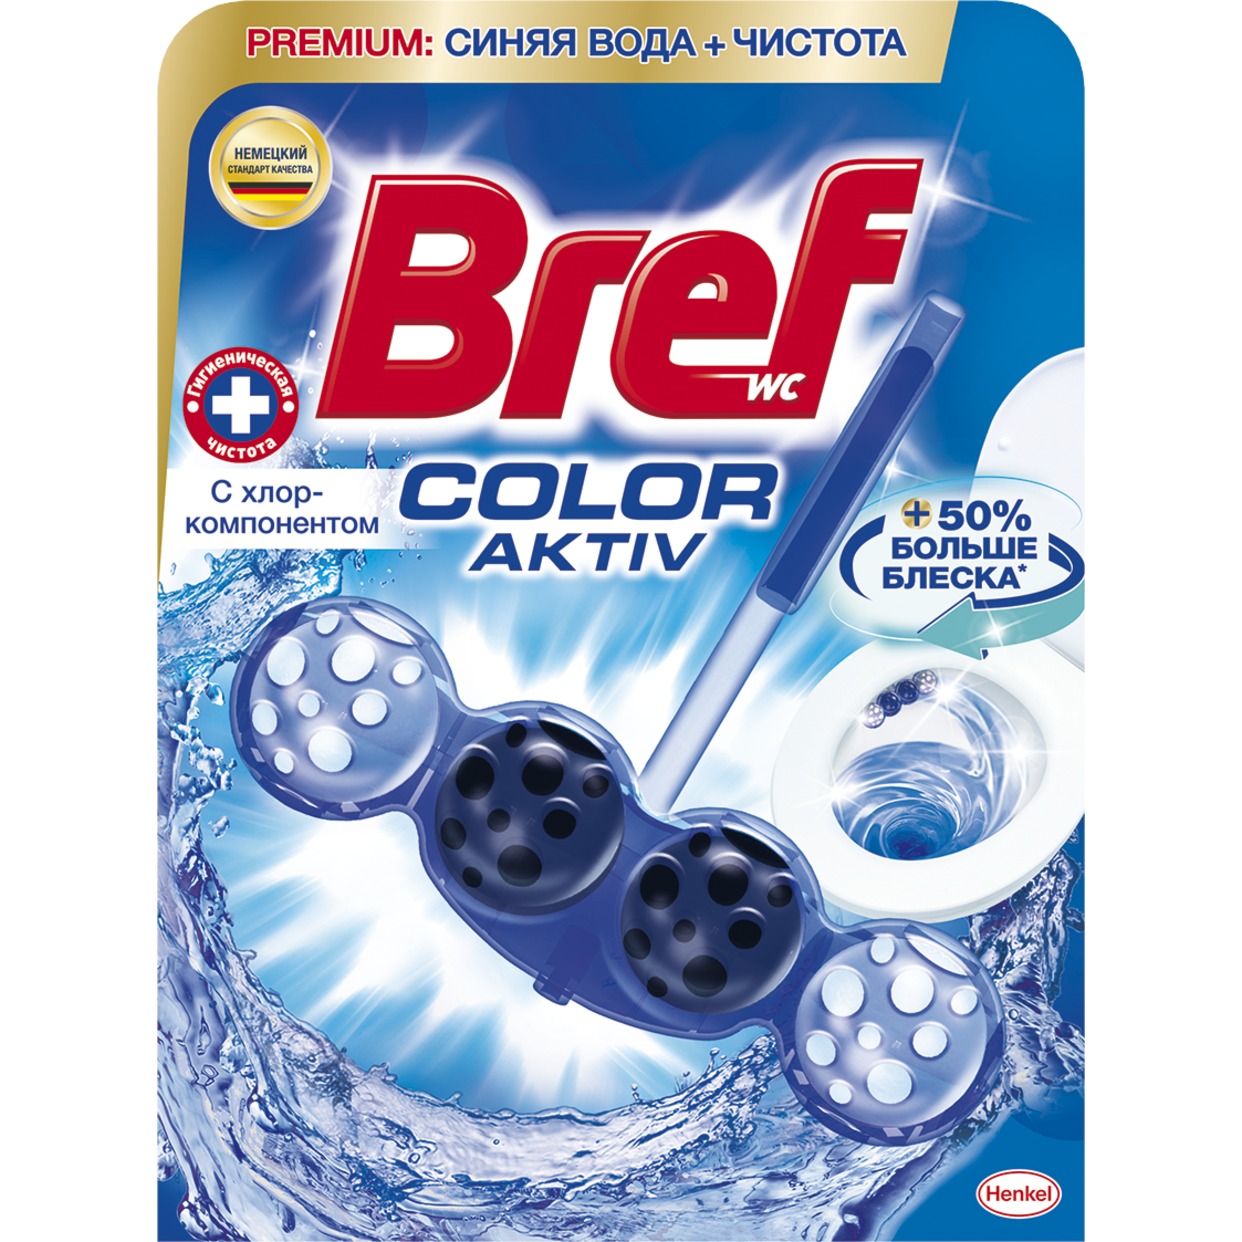 BREF Средство чистящее для унитаза Бреф Колор Актив с хлор-компонентом 50г по акции в Пятерочке